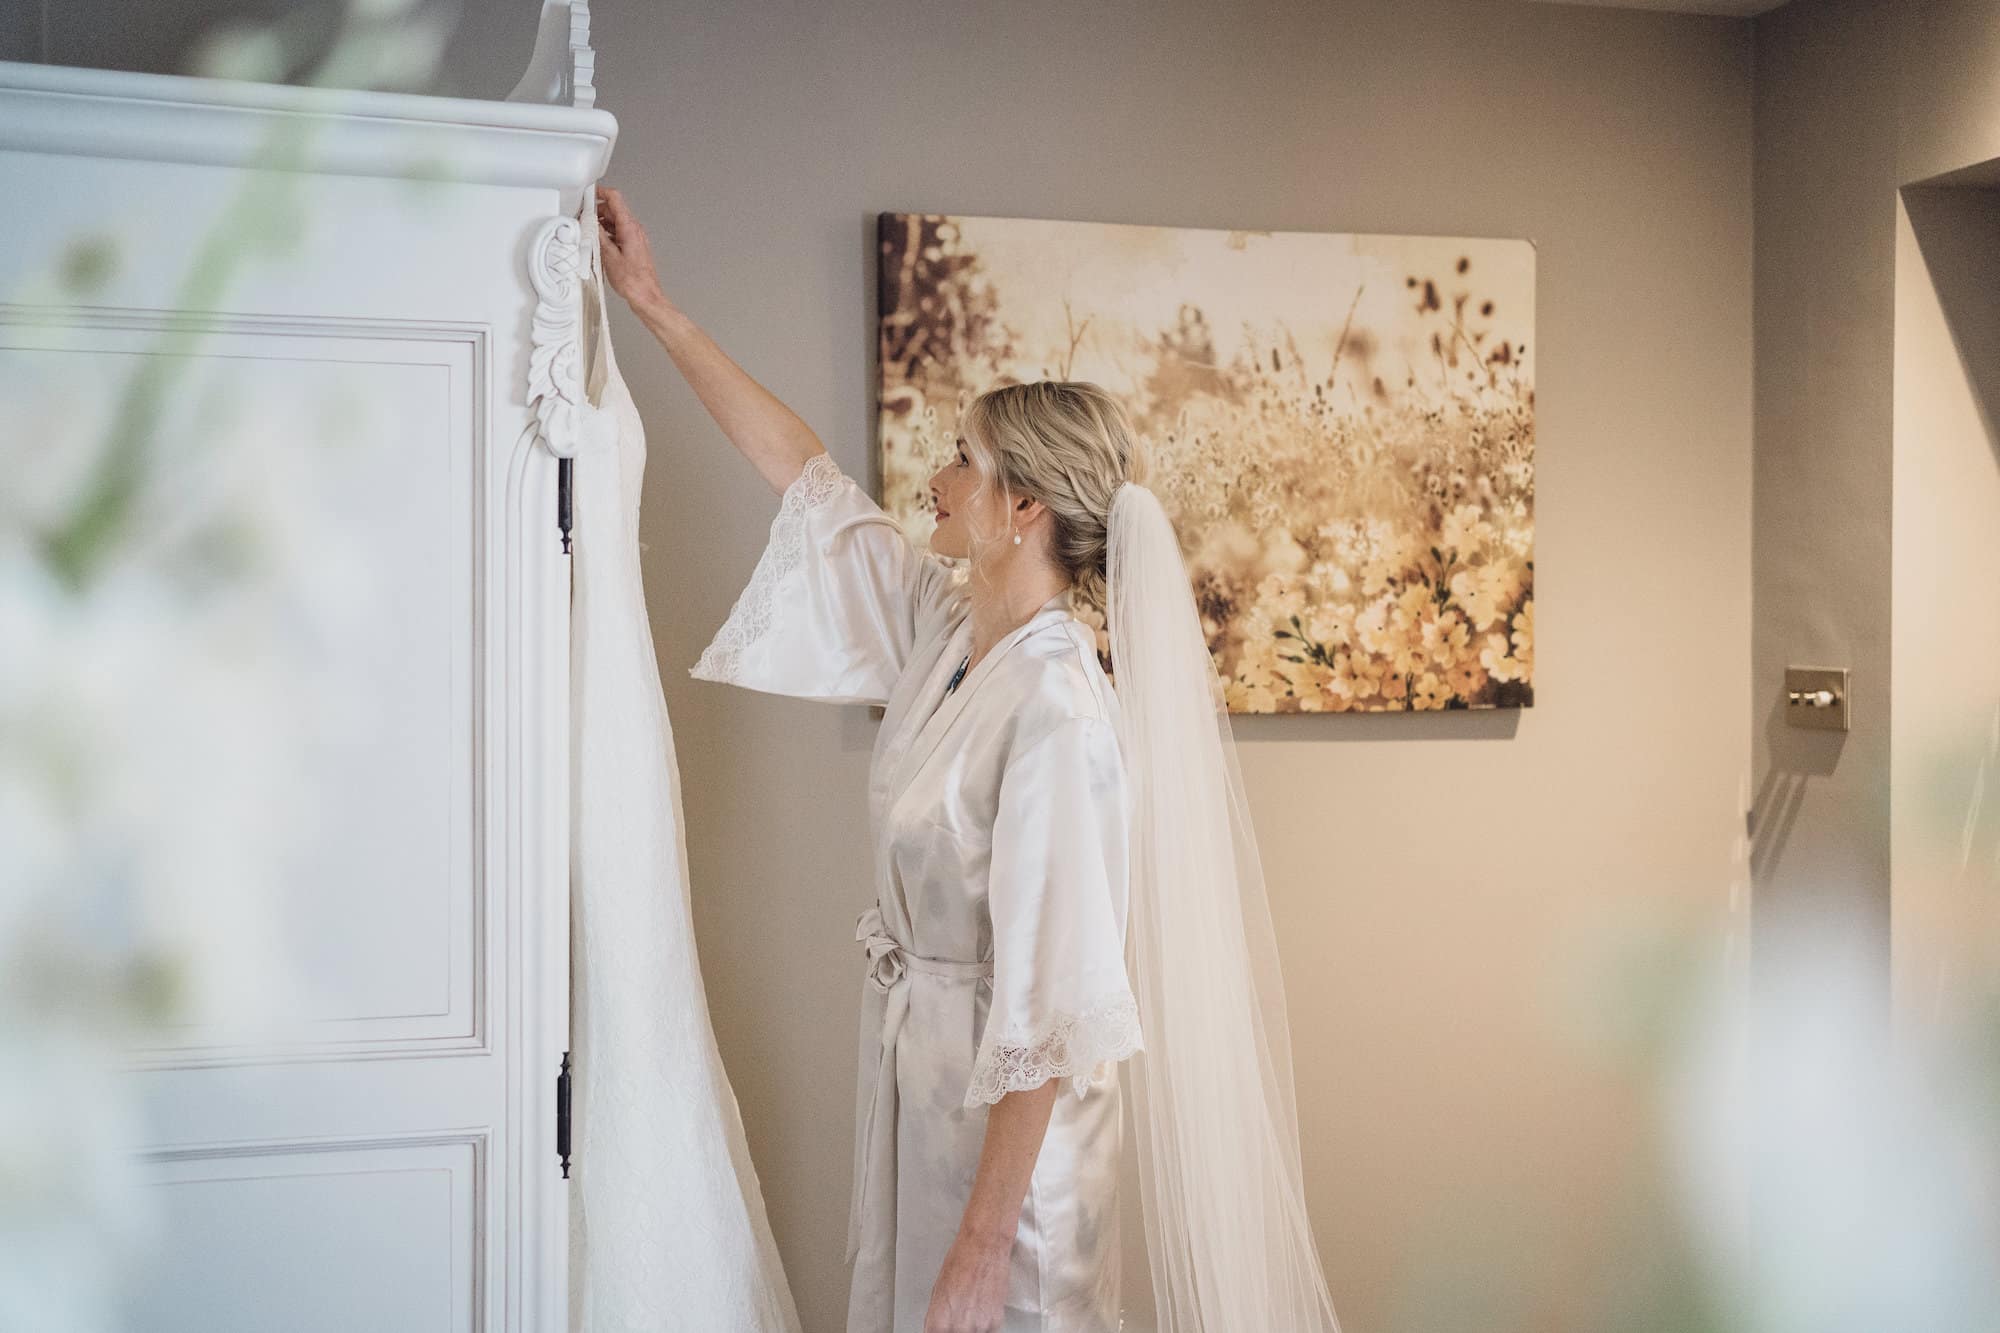 Bride picking up wedding dress off hanger